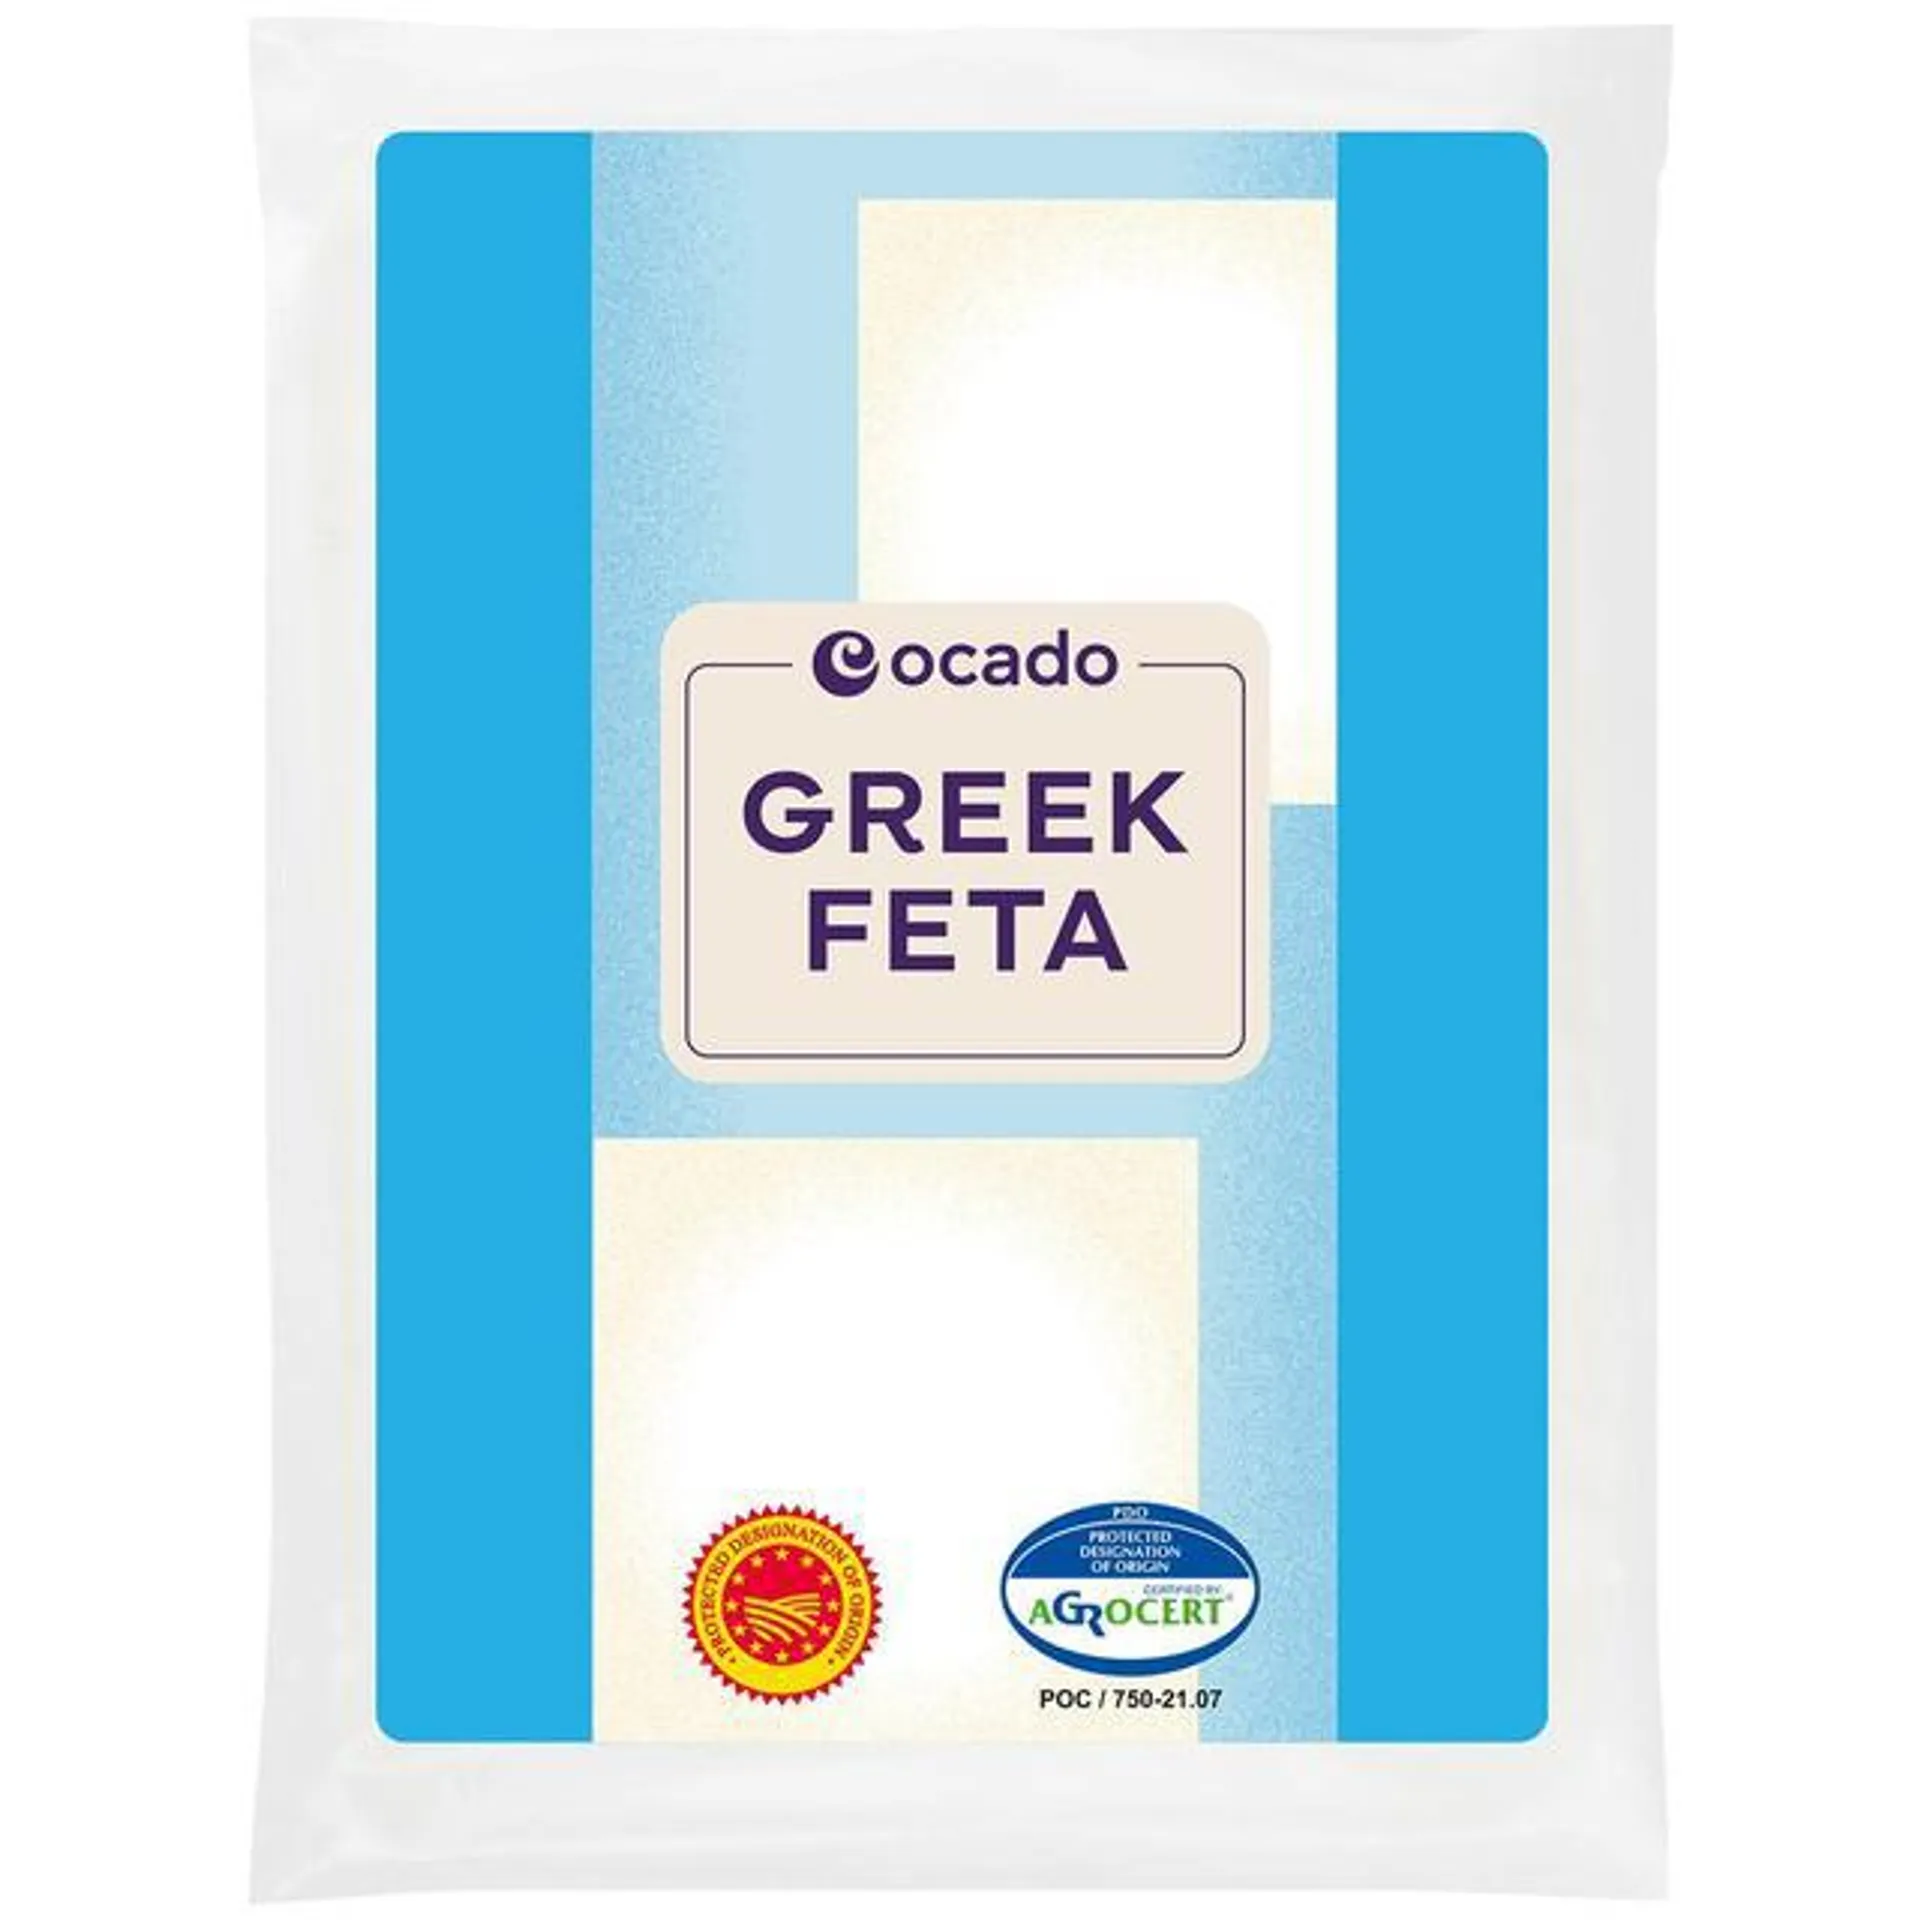 Ocado Greek Feta 200g